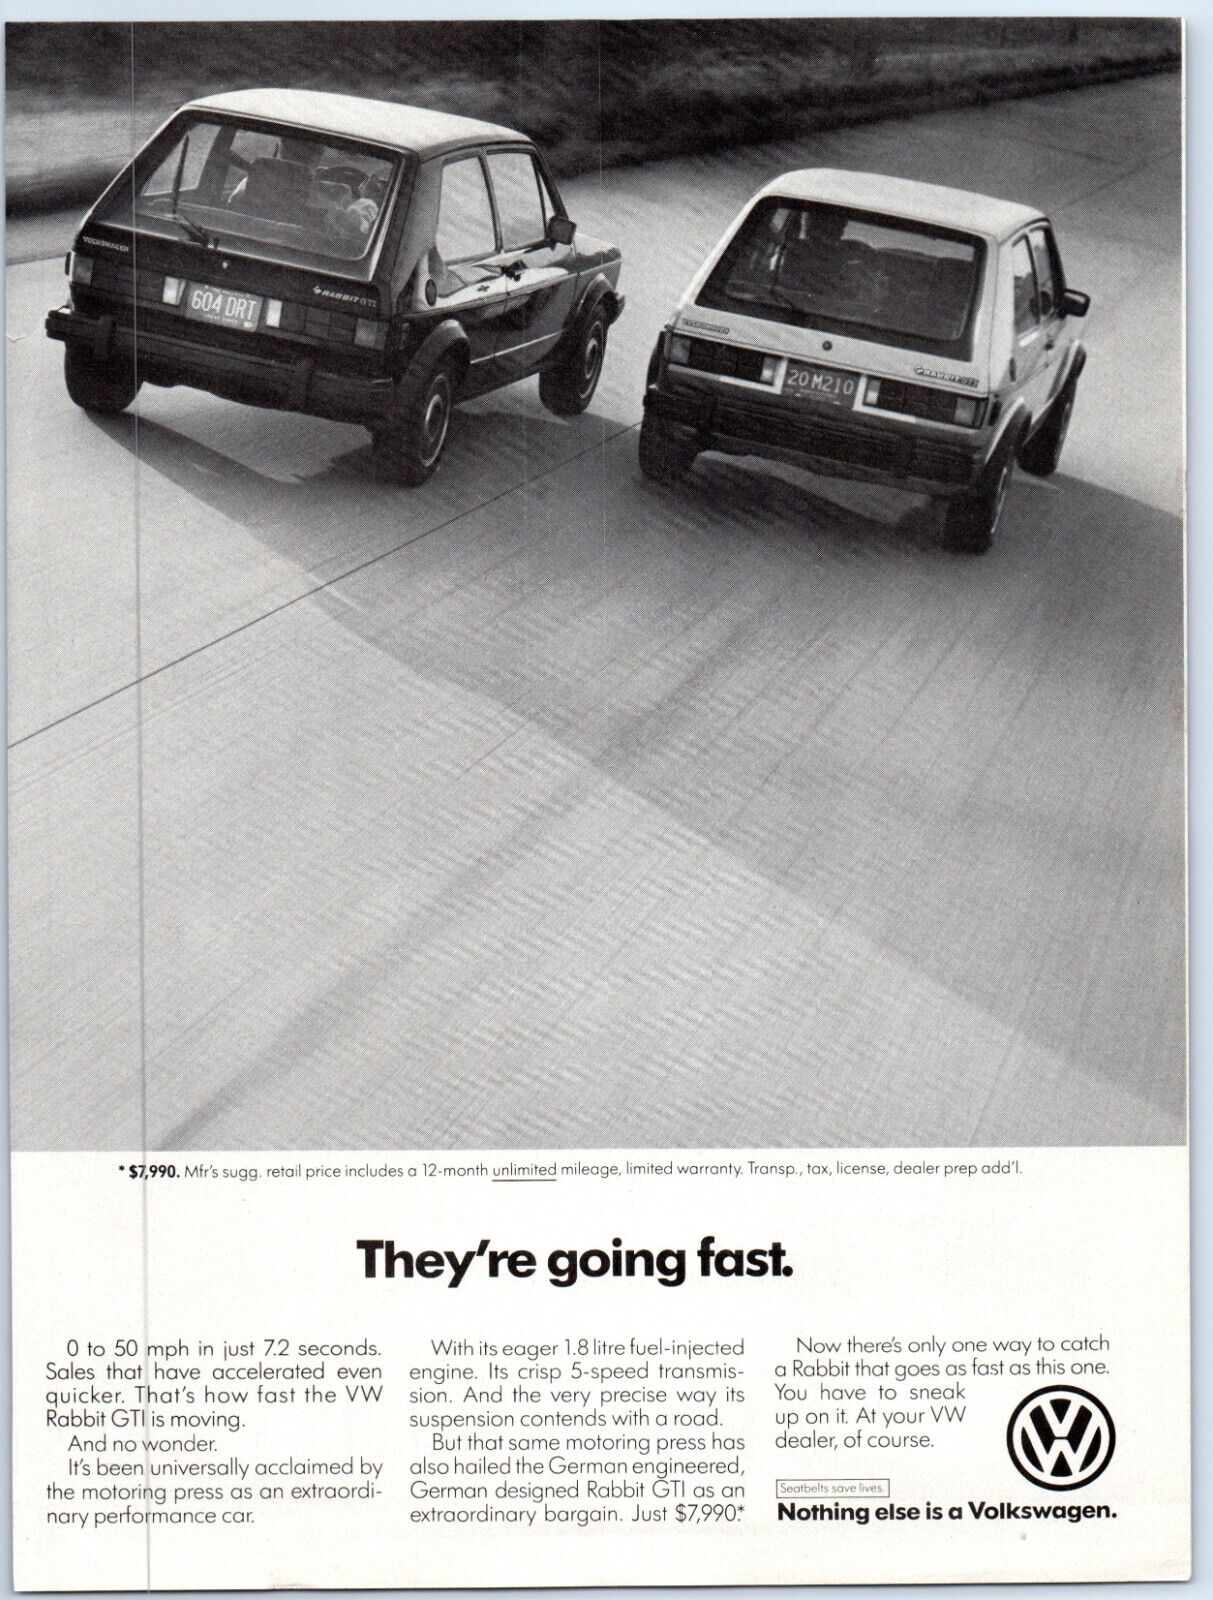 Volkswagen Rabbit GTI Black & White GOING FAST Hatchback 1983 Print Ad 8\